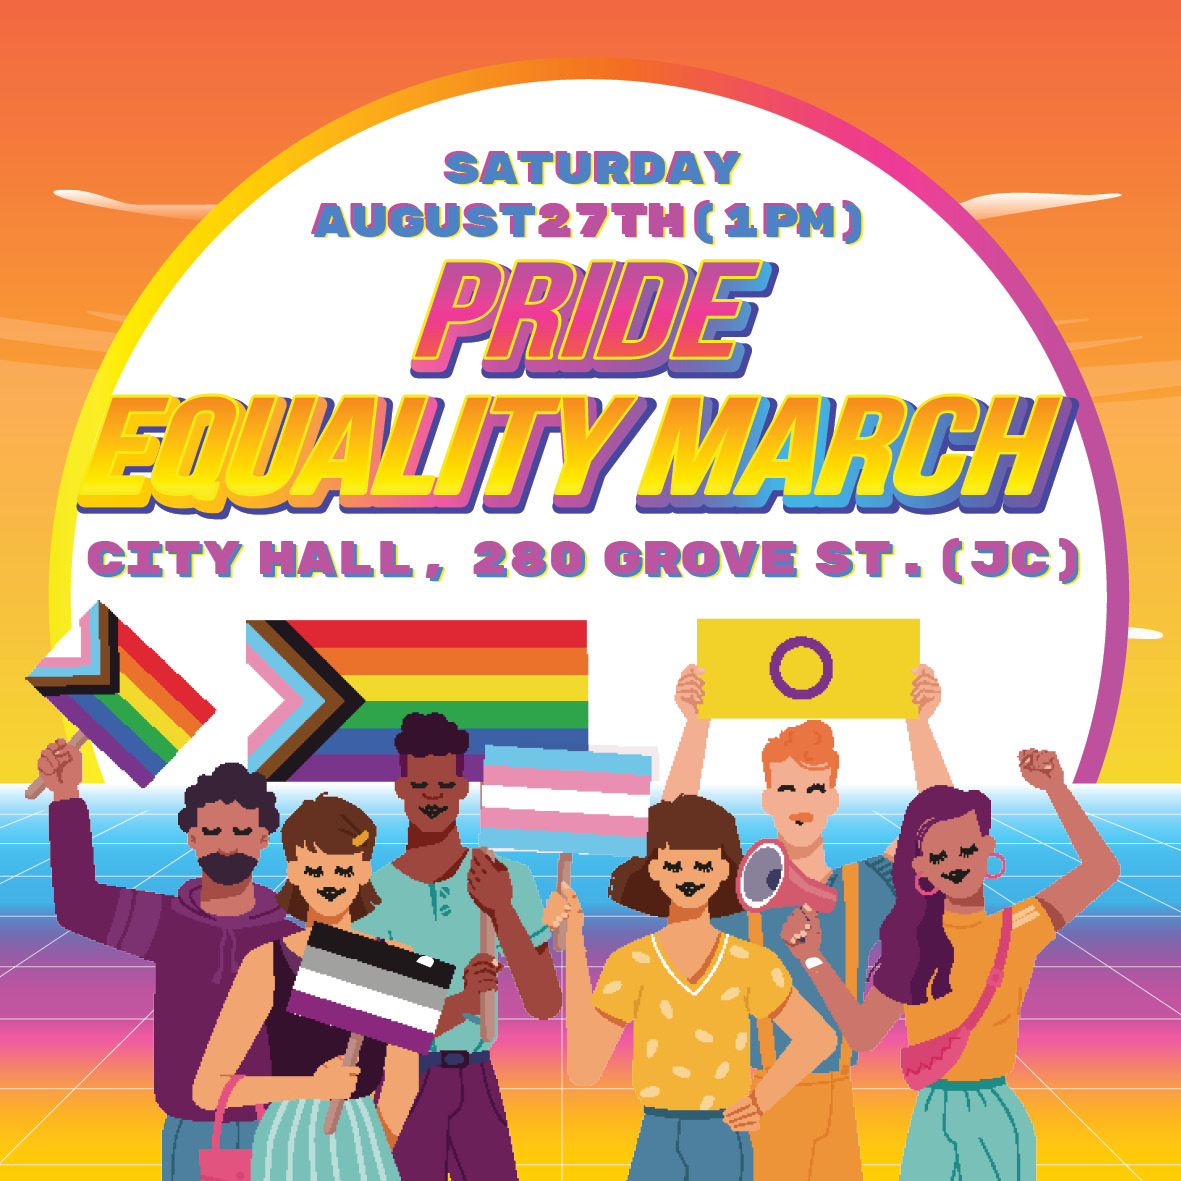 lotteri Citere mover Pride Equality March - Jersey City LGBTQ+ Pride Festival